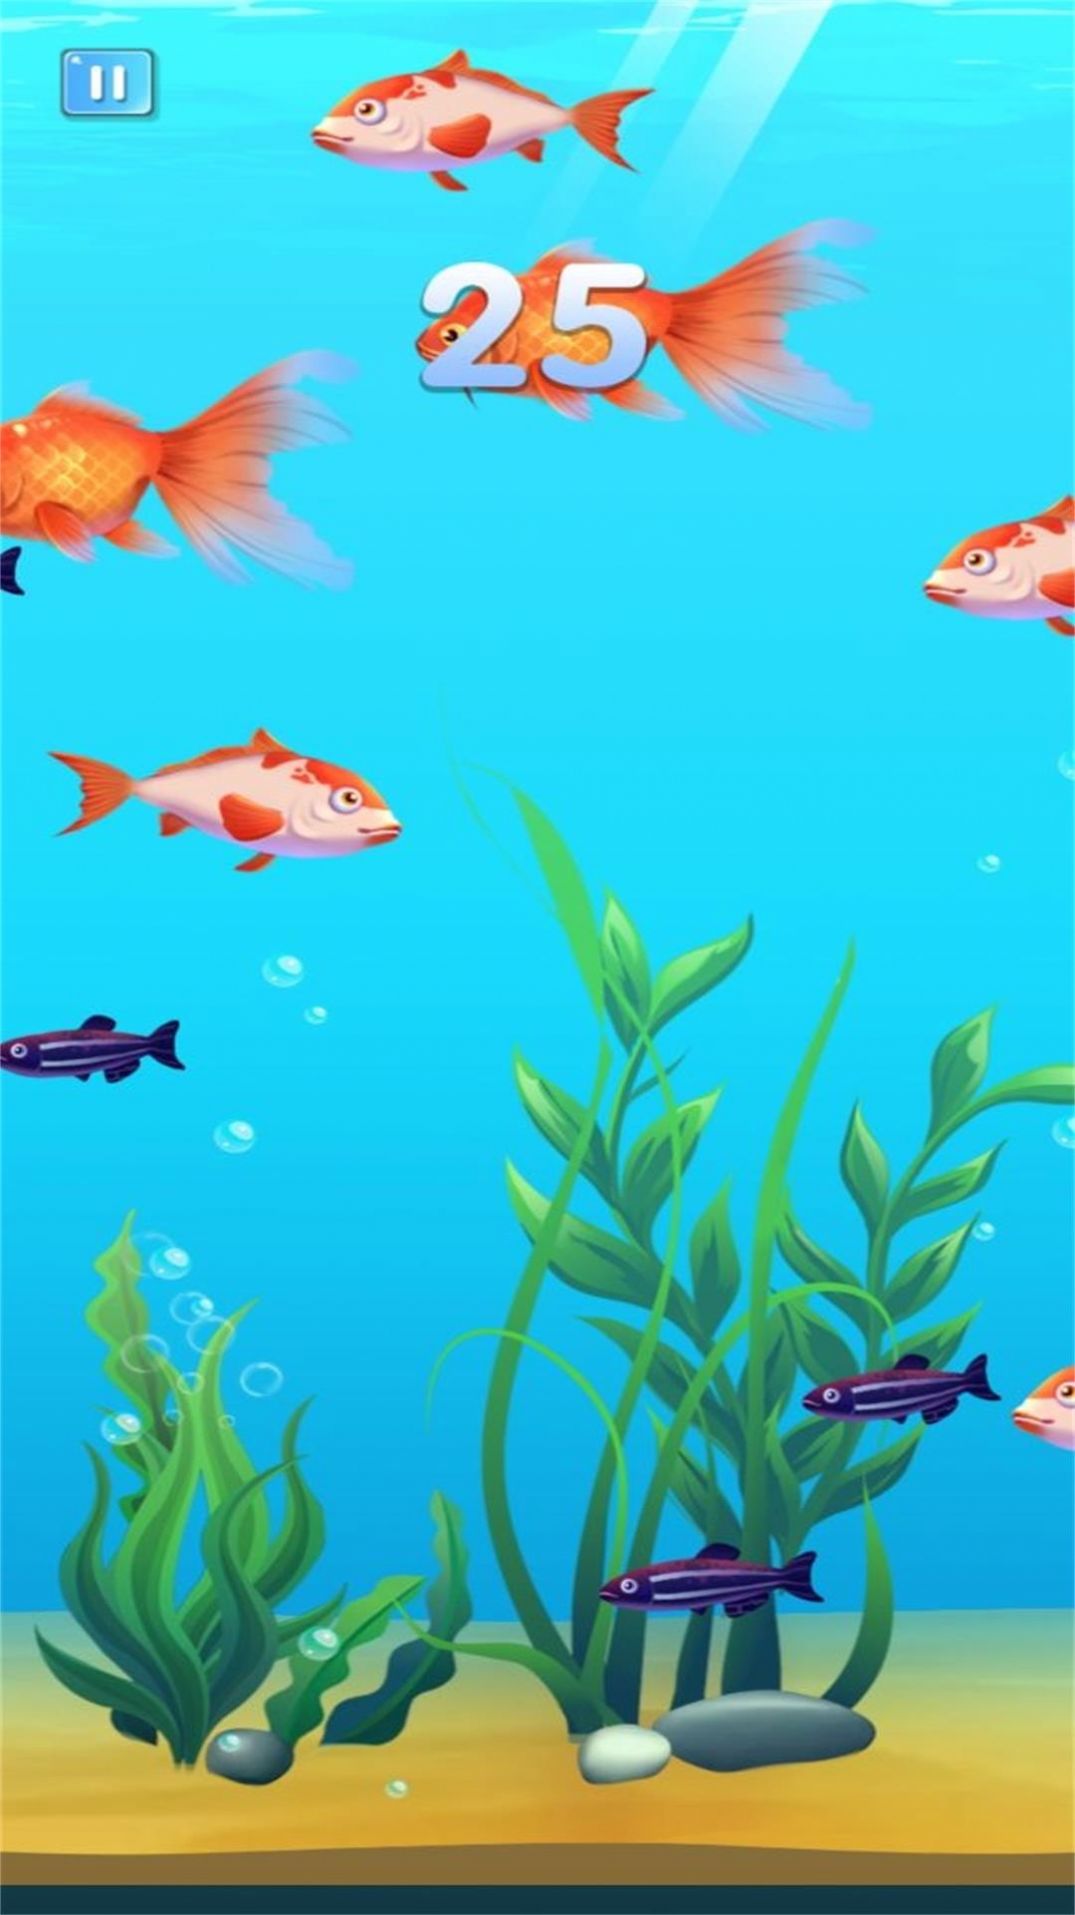 小鱼的吞食逆袭游戏下载手机版 v3.4.19截图2